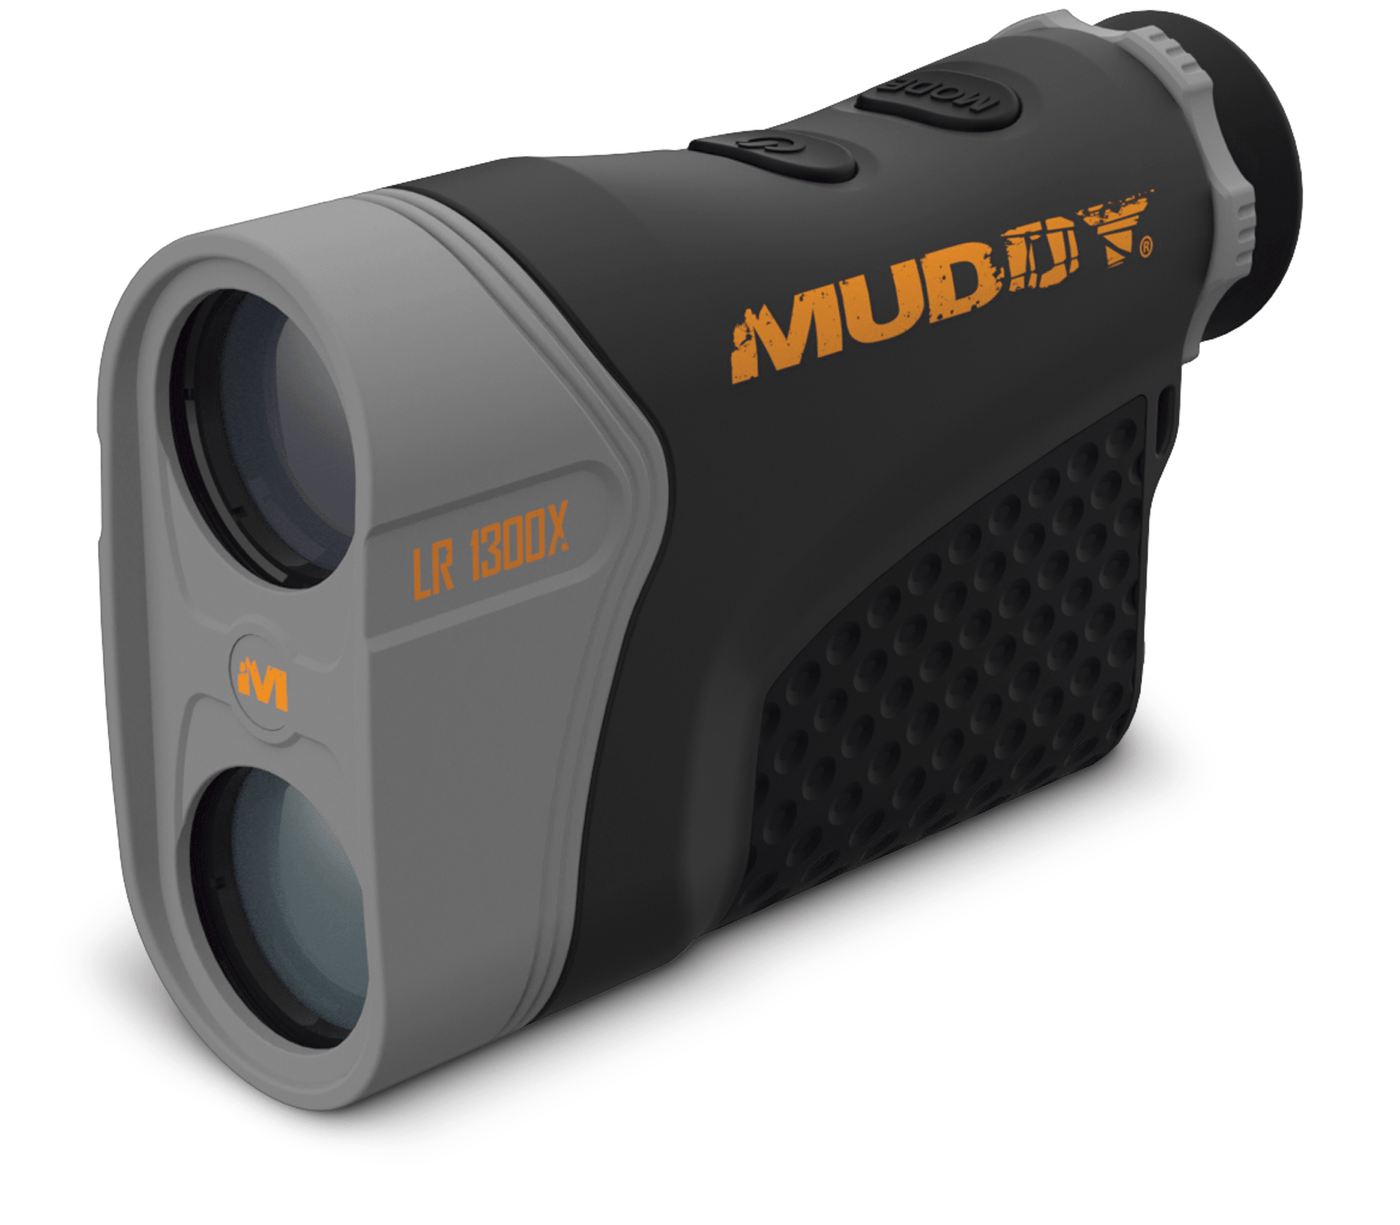 Muddy Muddy 1300 W Hd, Muddy Mud-lr1300x Muddy Range Finder 1300 W Hd Optics